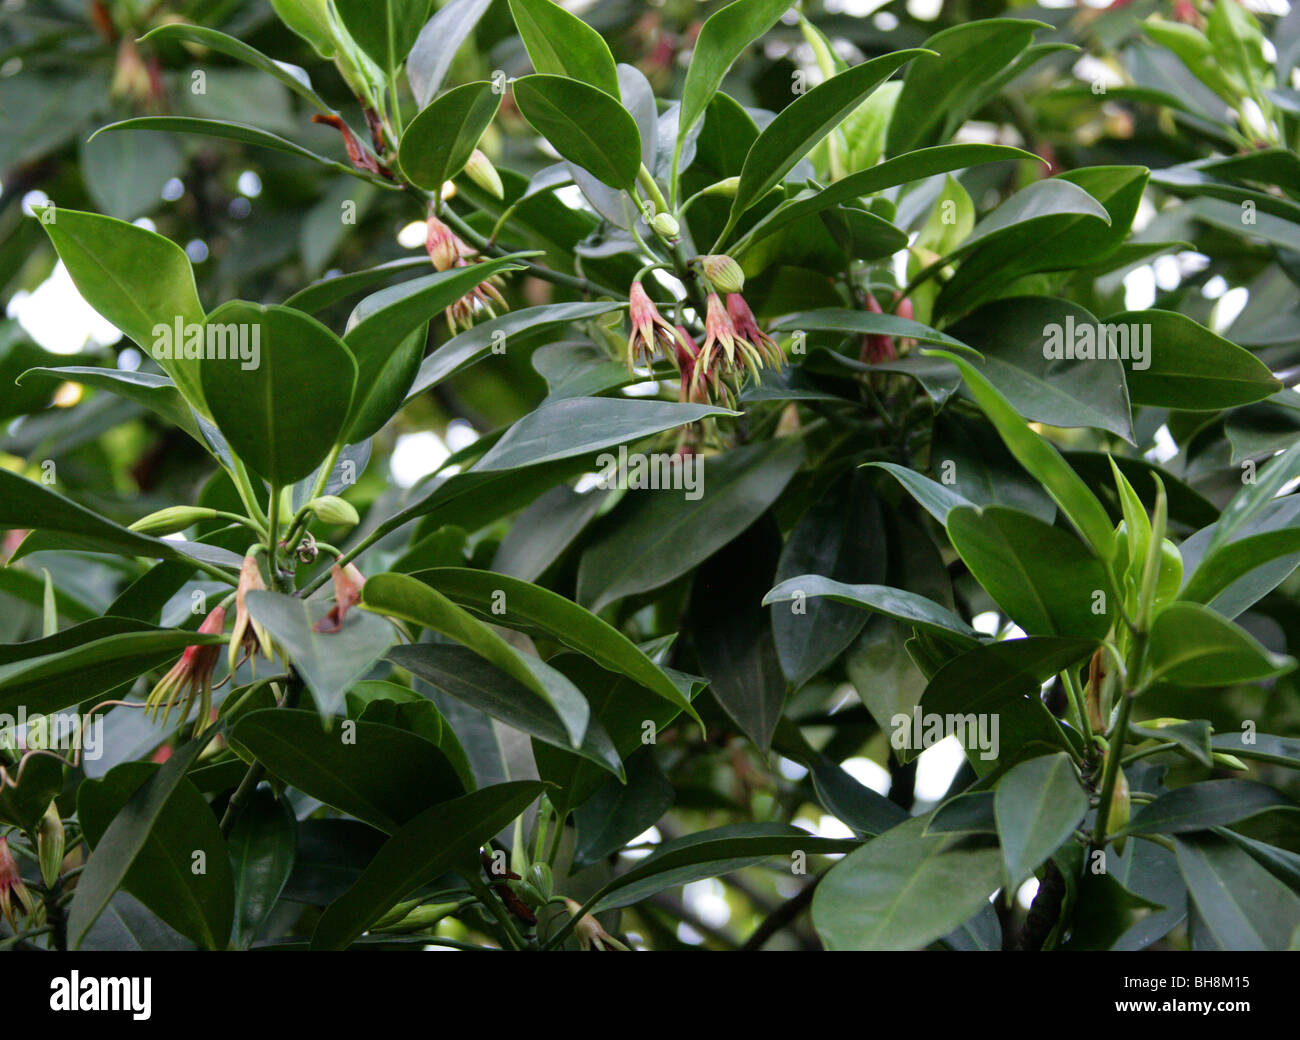 Burma Mangrove, Mangroven oder orientalische Mangrove Bruguiera Gymnorrhiza Rhizophoraceae, tropischen Asien und Pazifik, Australien. Stockfoto